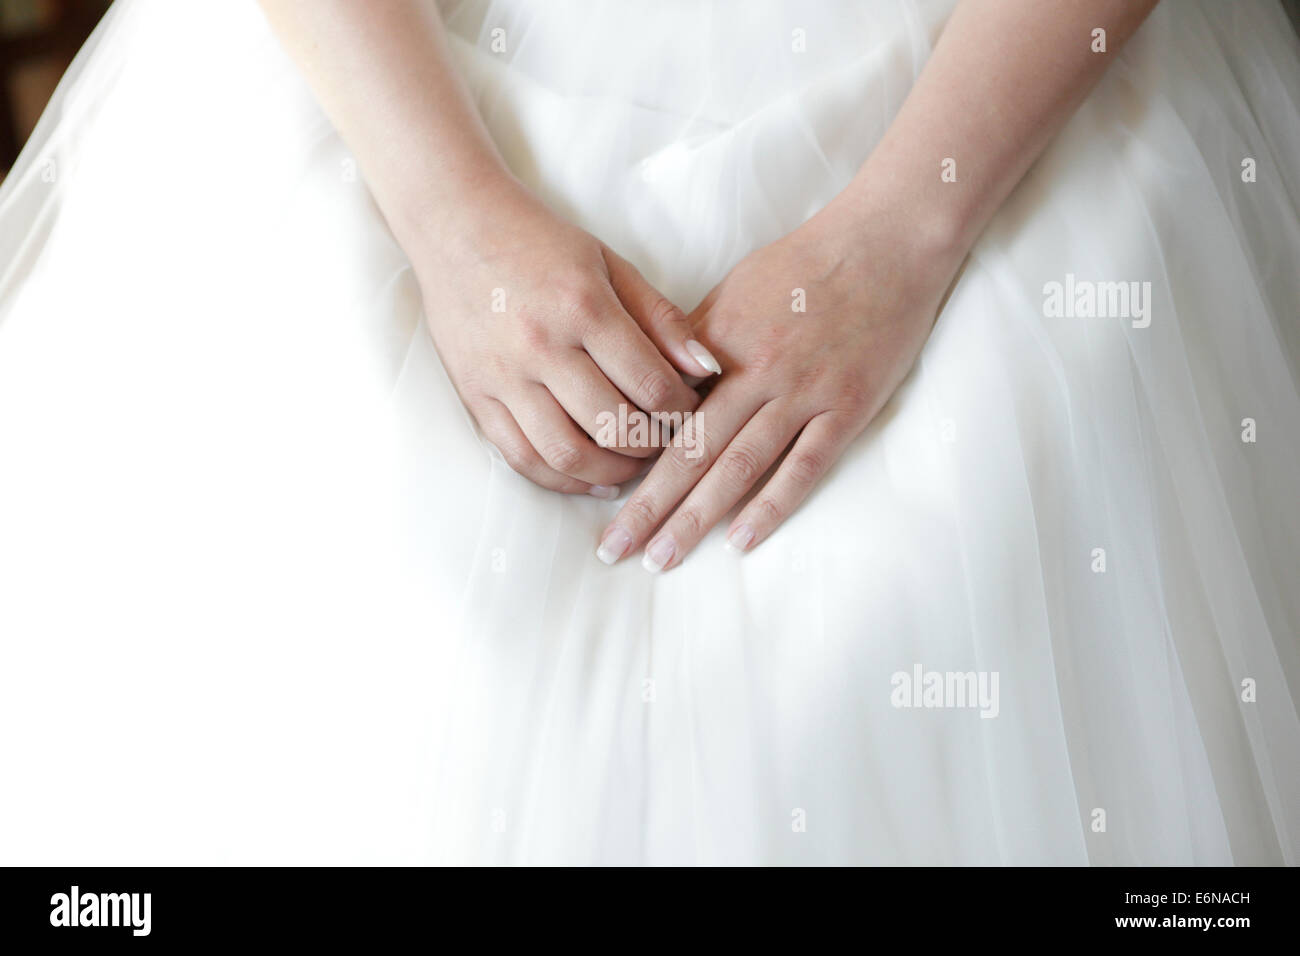 Les mains de la mariée se trouvant sur la robe nuptiale Banque D'Images